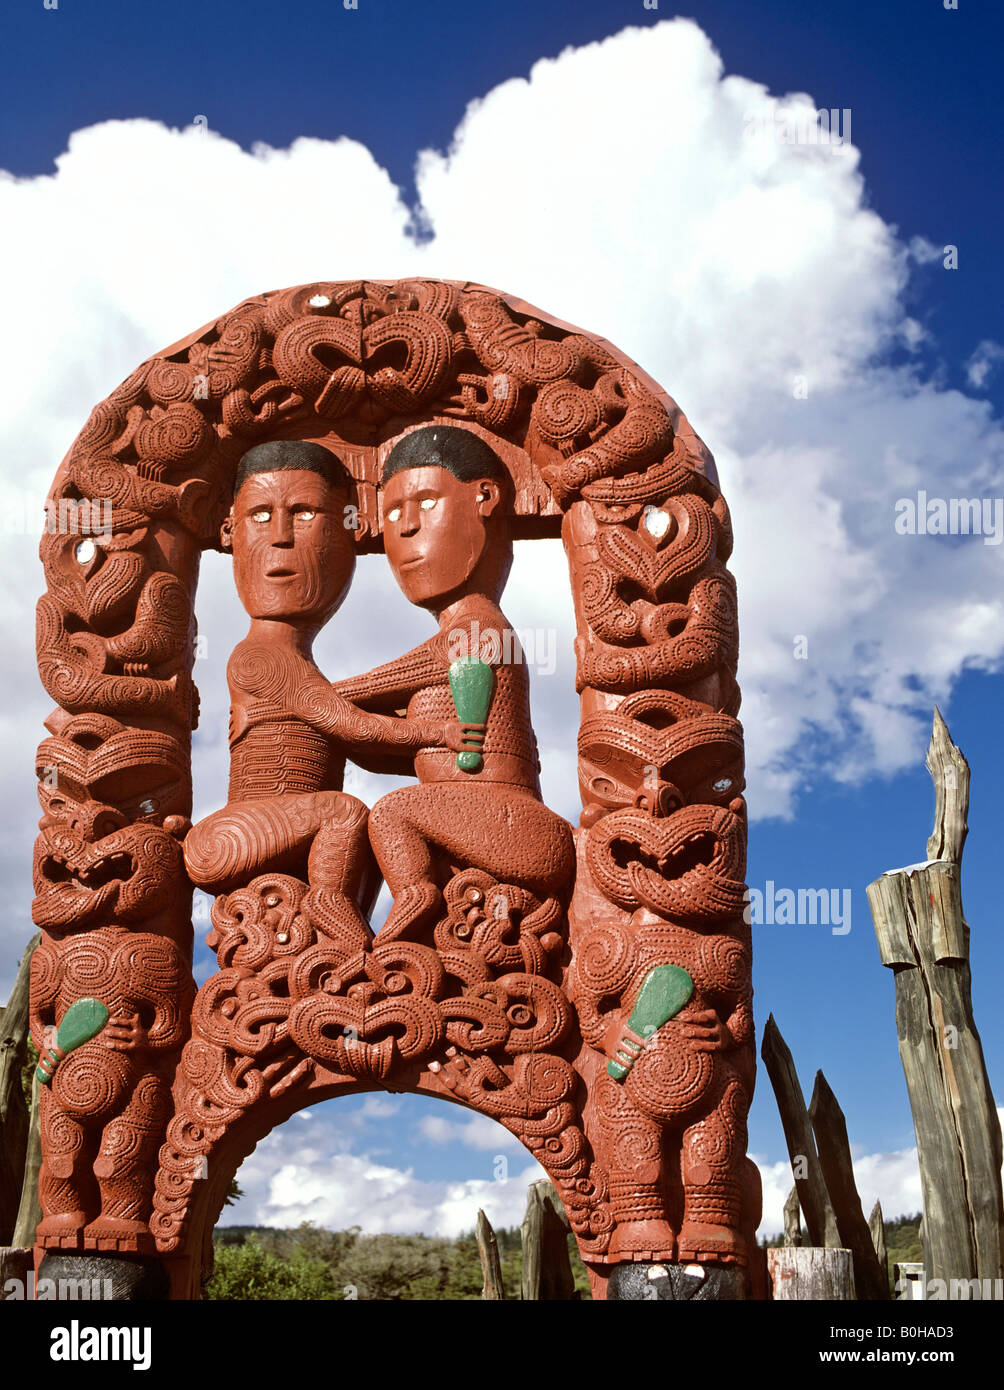 À la porte, de Whakarewarewa village Maori, sculpture sur bois, Rotorua, île du Nord, Nouvelle-Zélande Banque D'Images